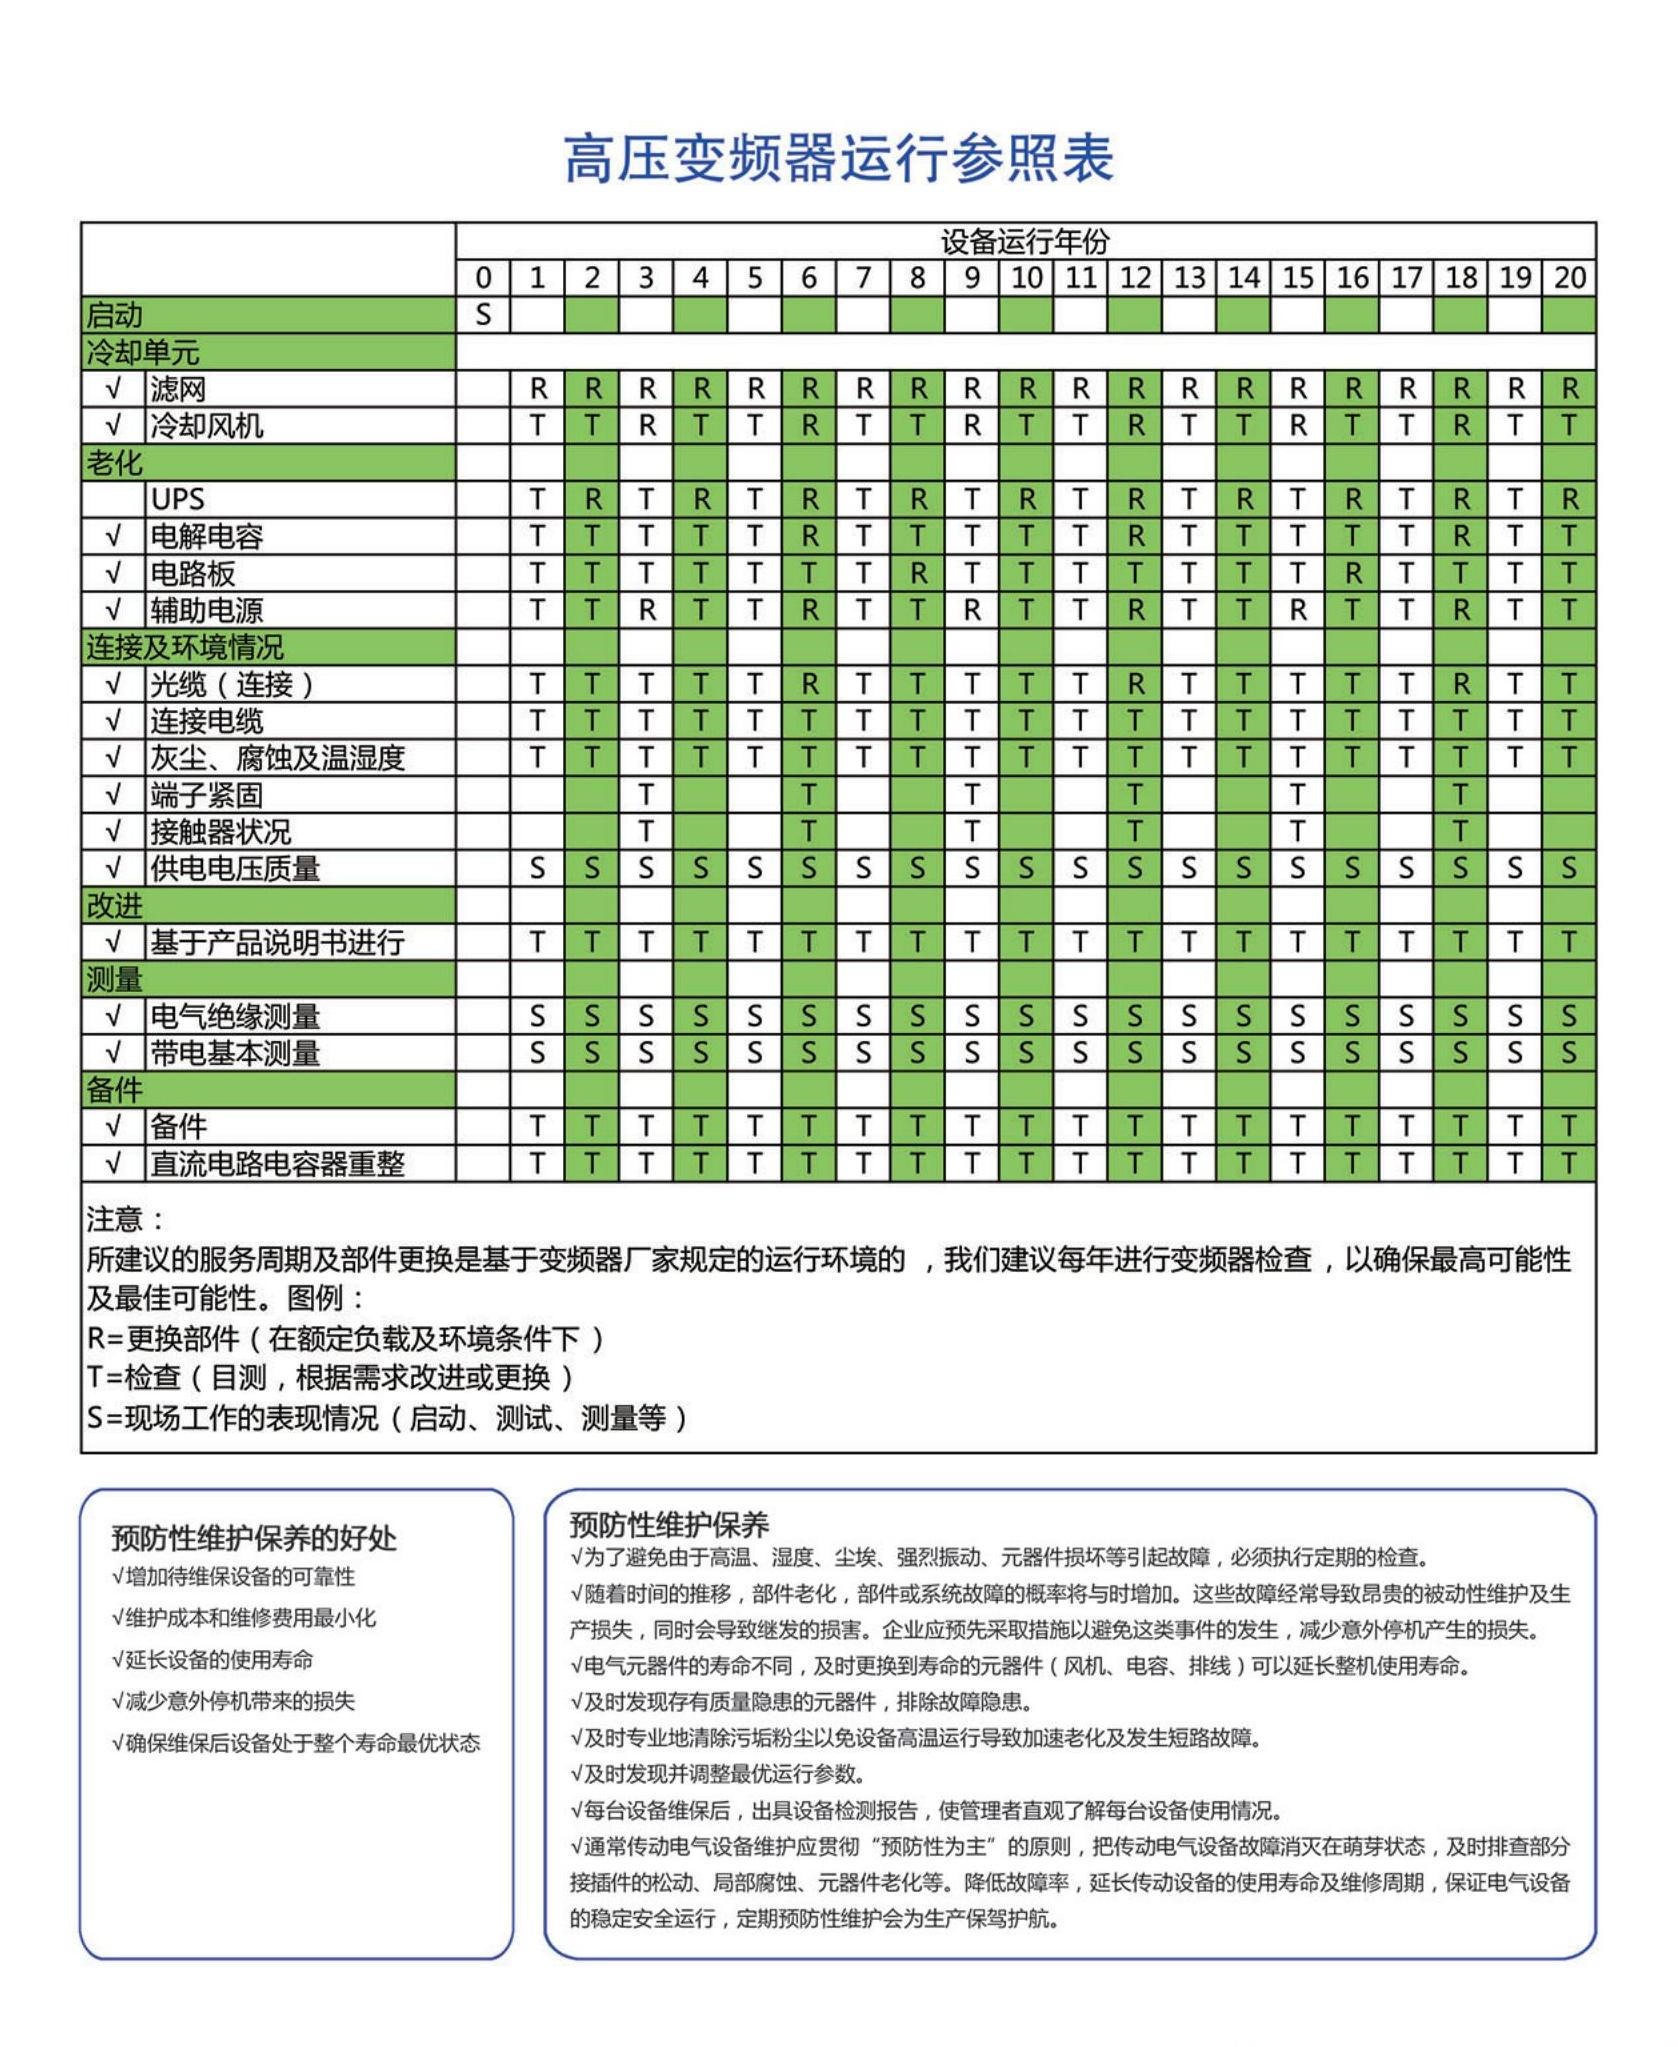 杭州电驰科技有限公司 宣传页_06(1)2.png